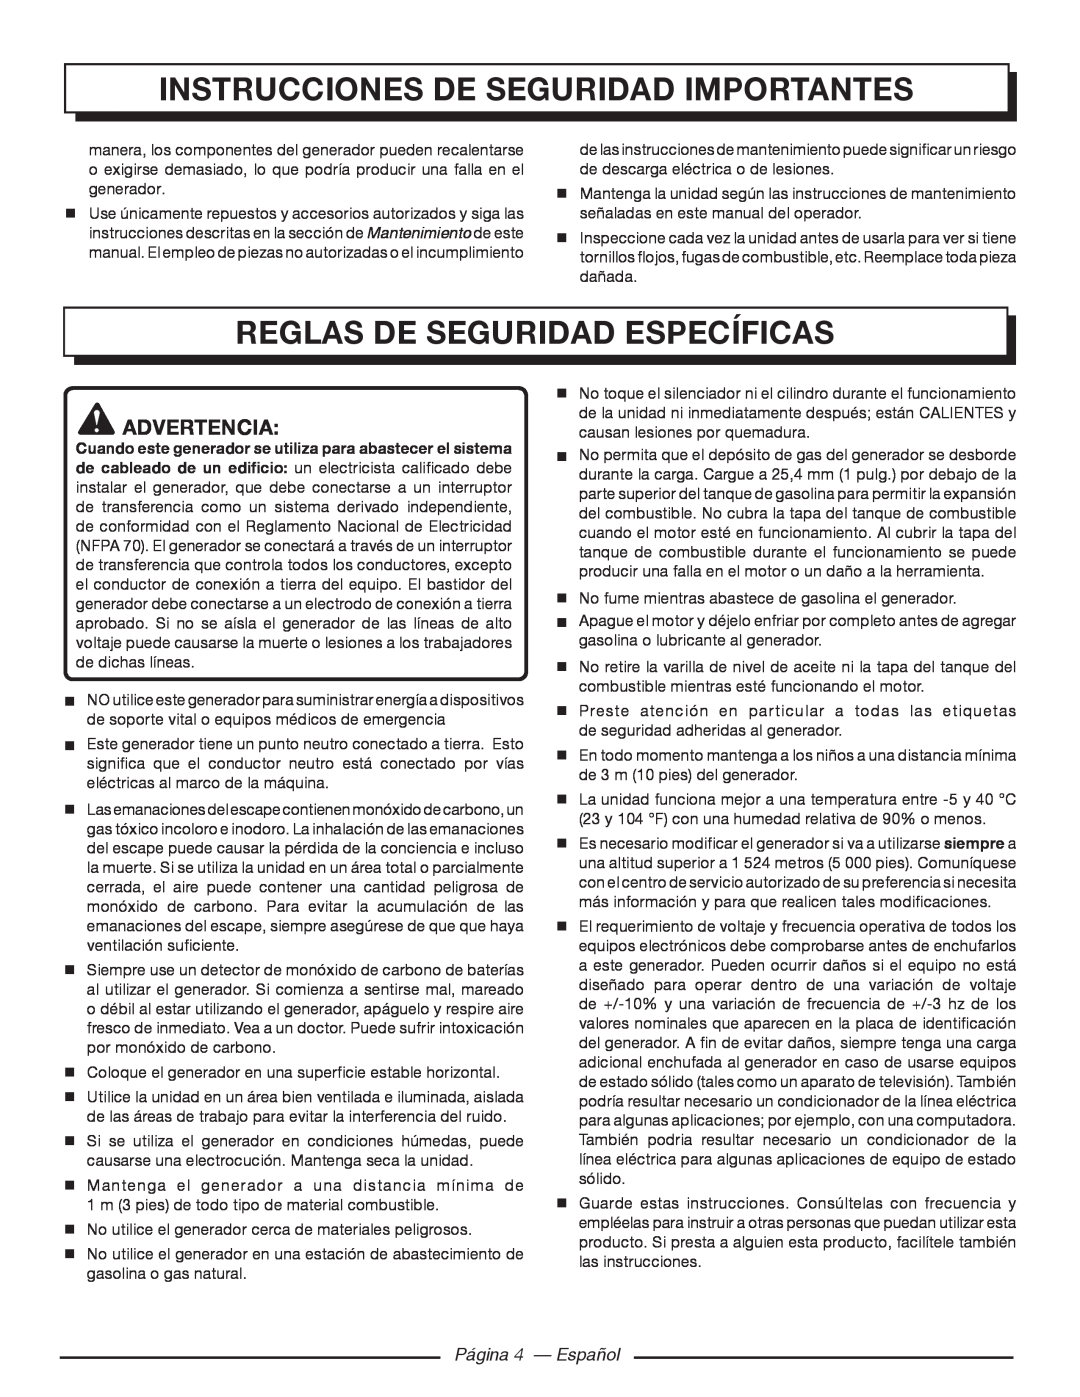 Homelite HGCA5700 Reglas De Seguridad Específicas, Página 4 — Español, Instrucciones de seguridad importantes, Advertencia 